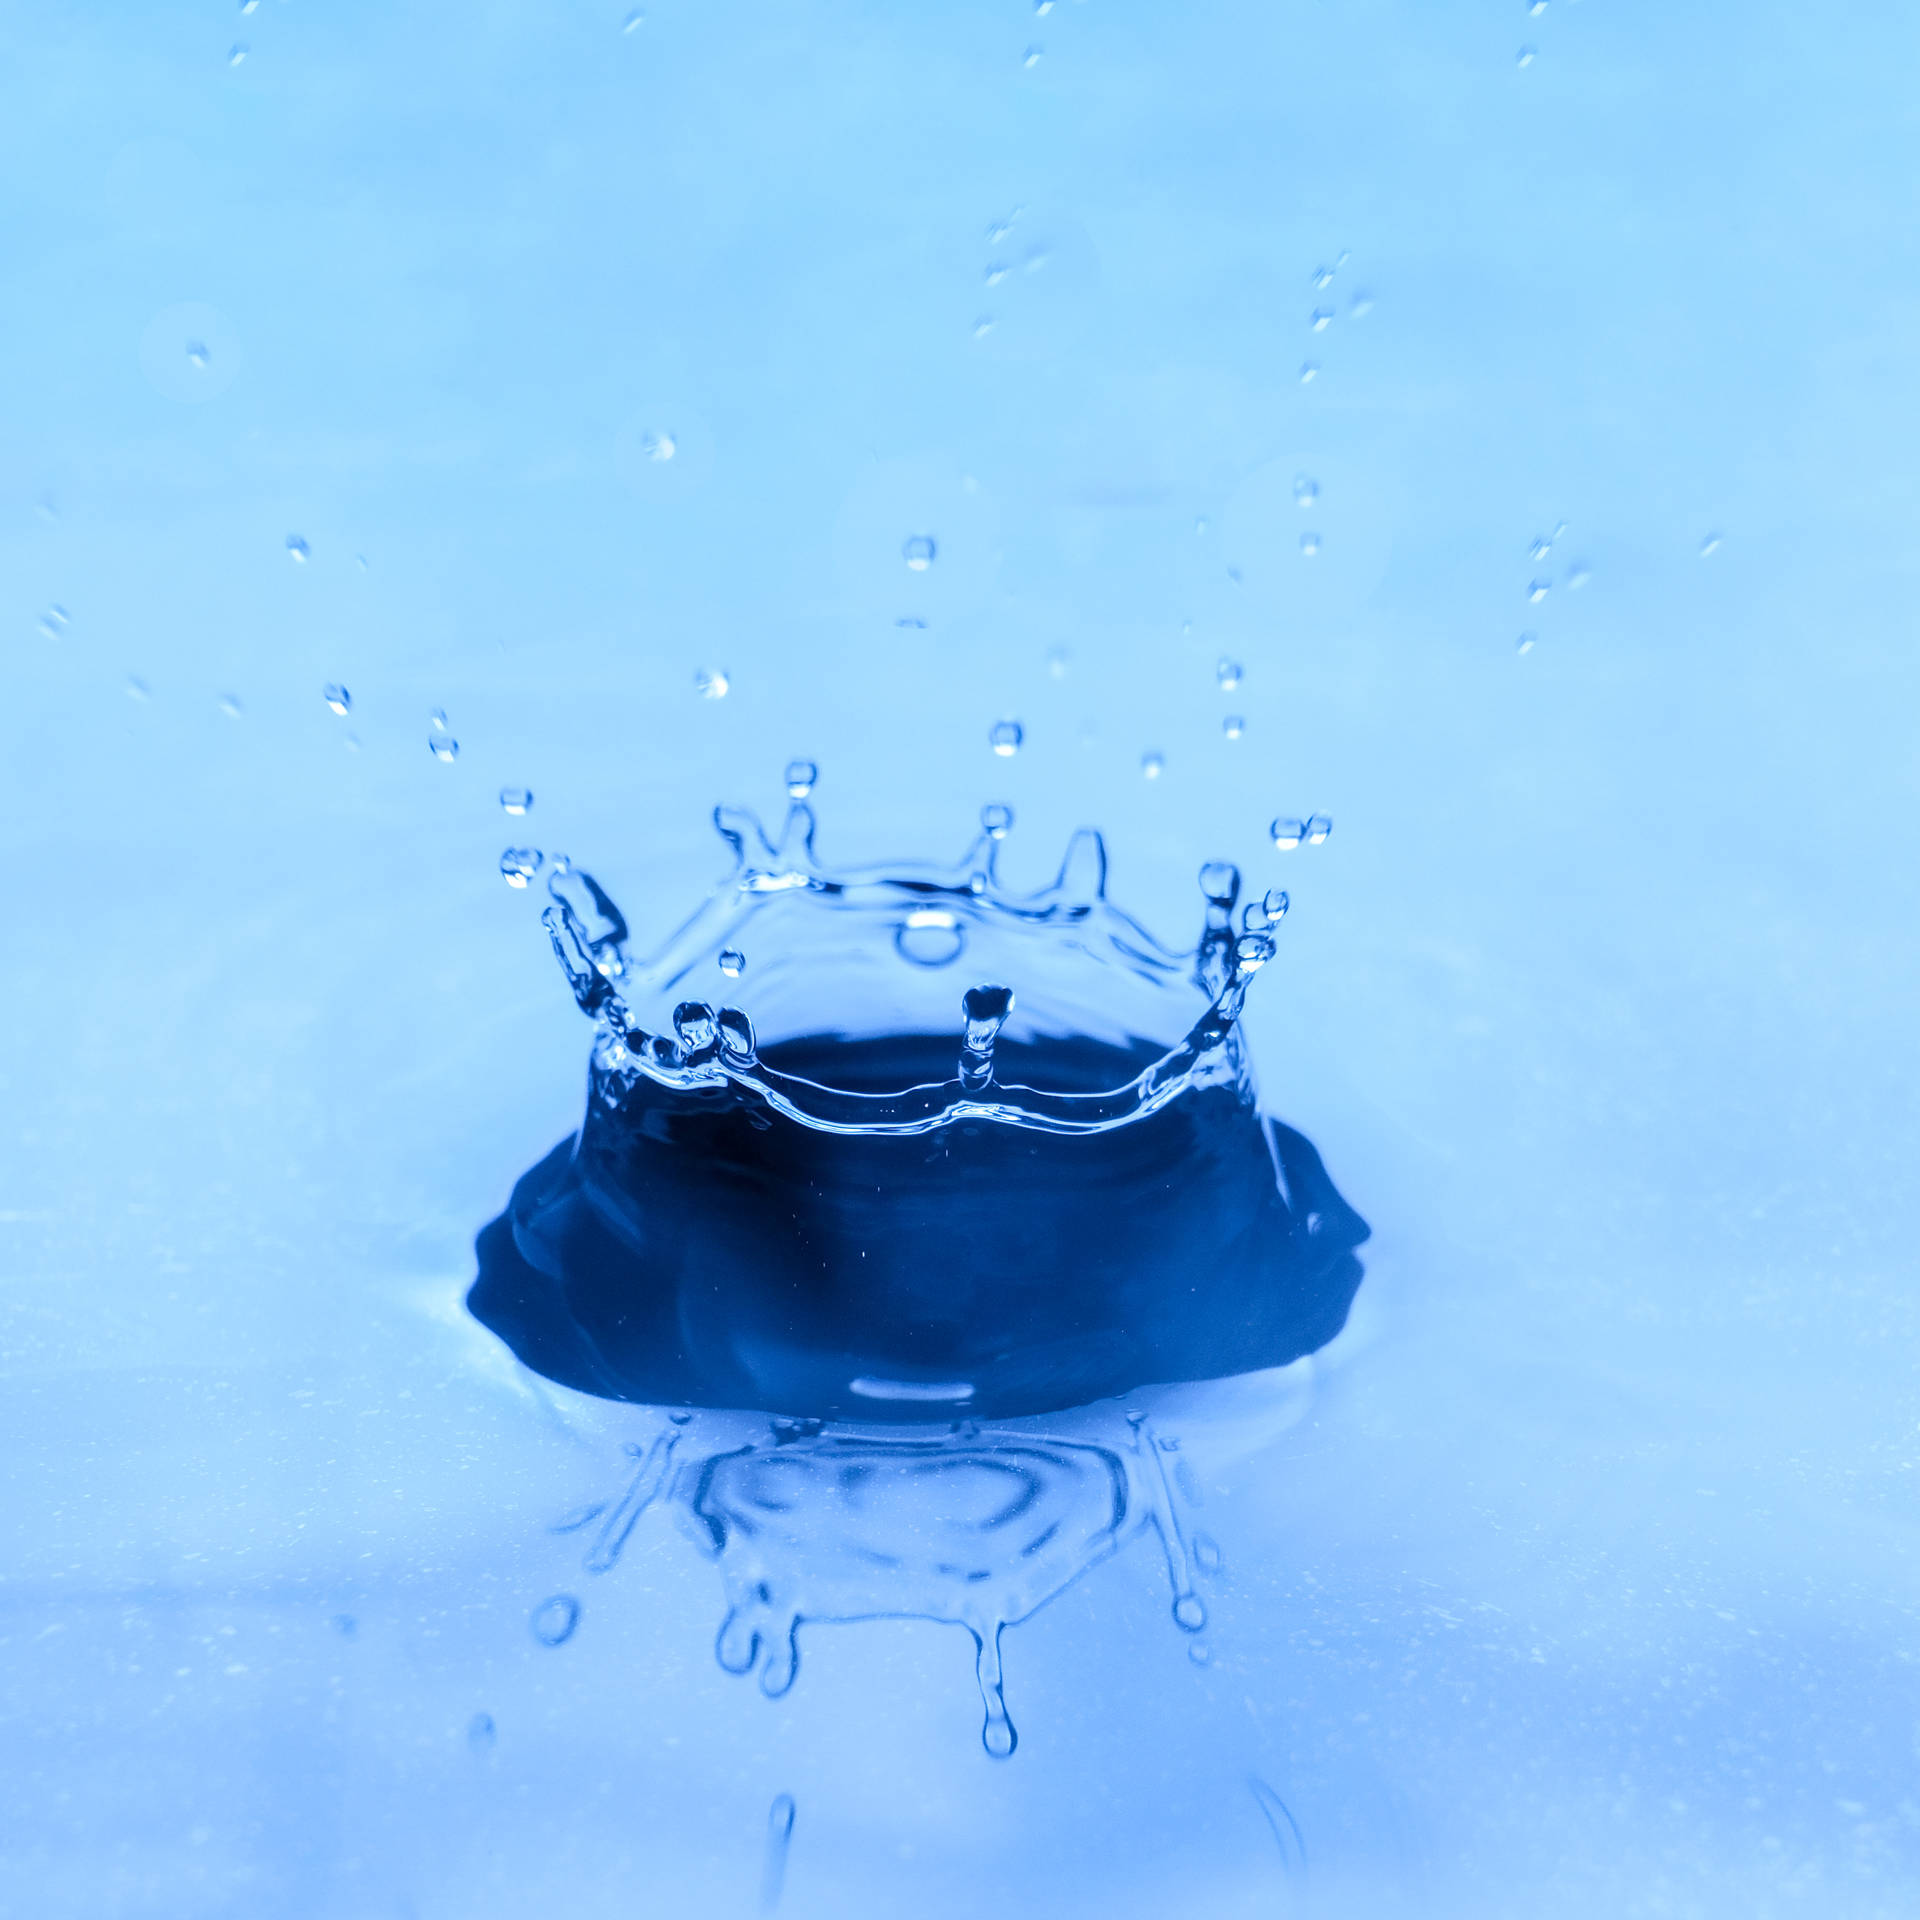 Water Splash Image